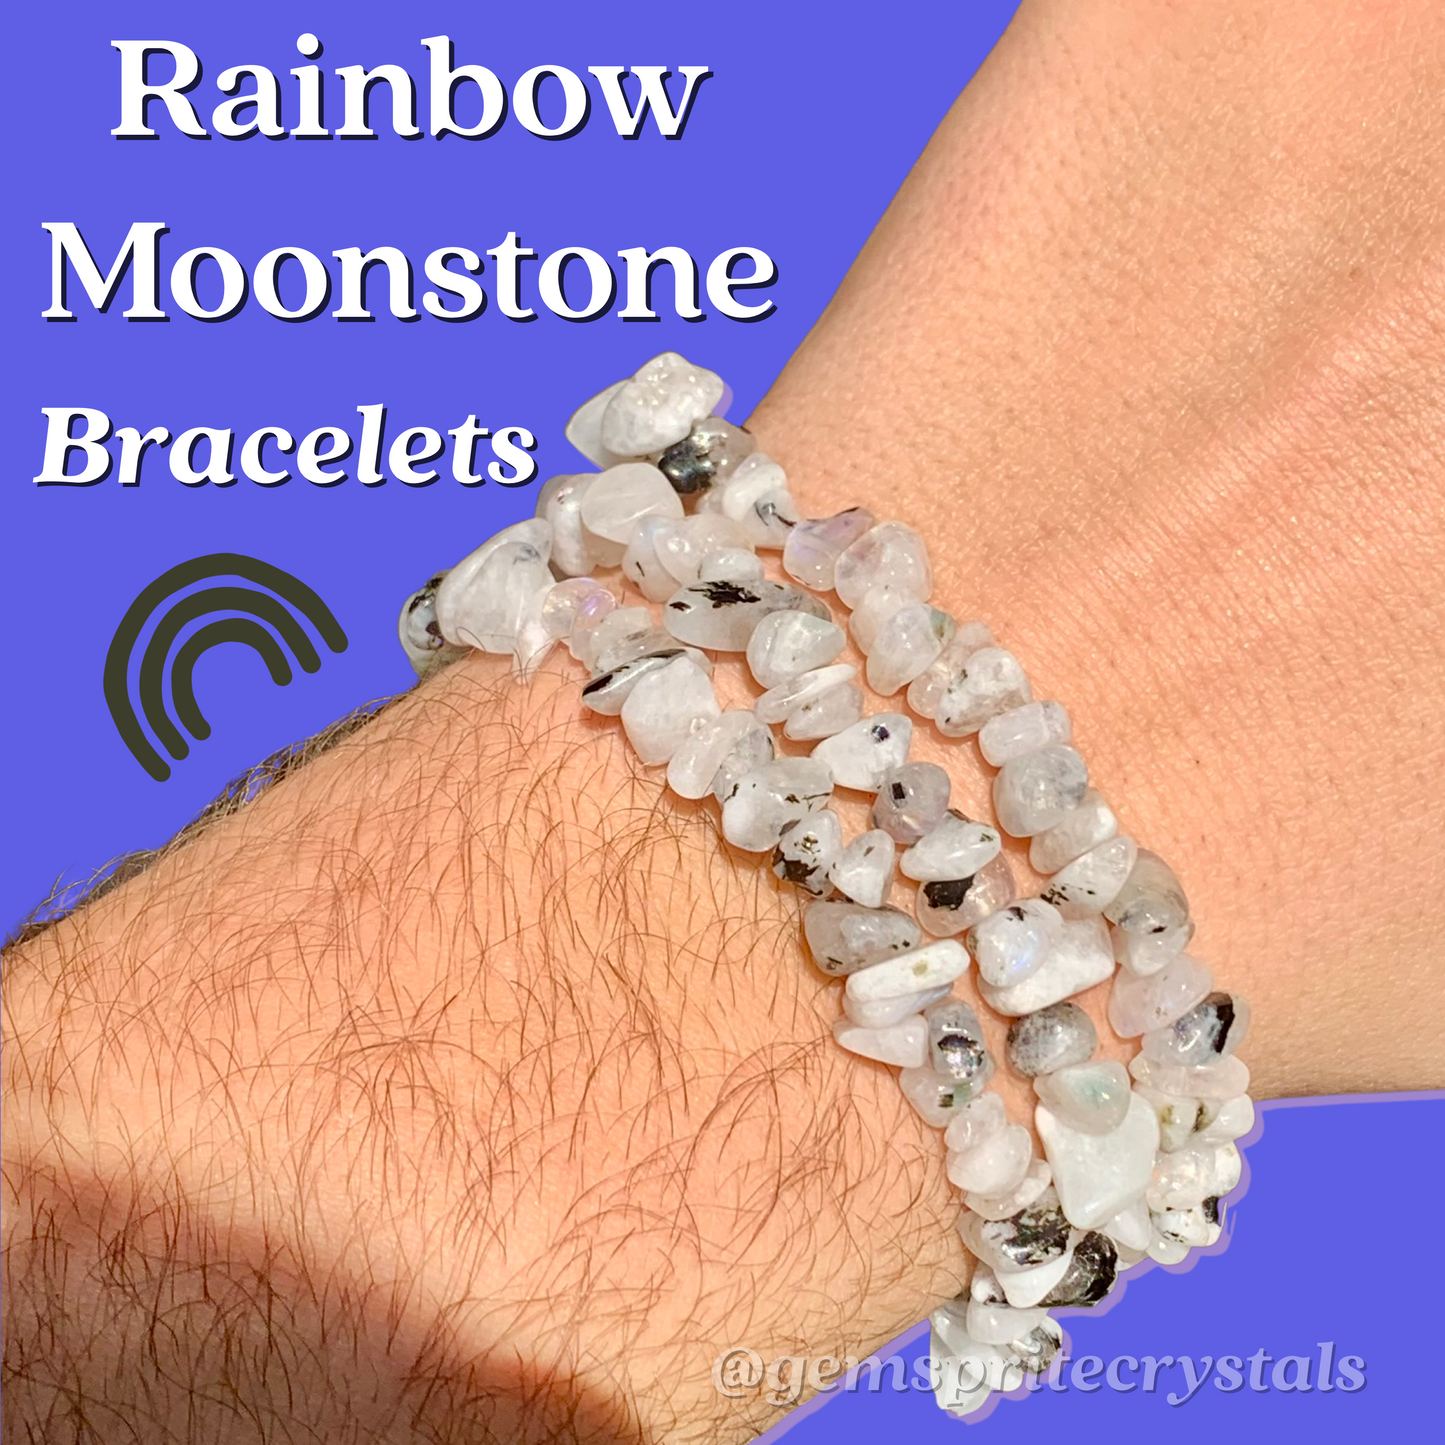 Rainbow Moonstone Bracelets